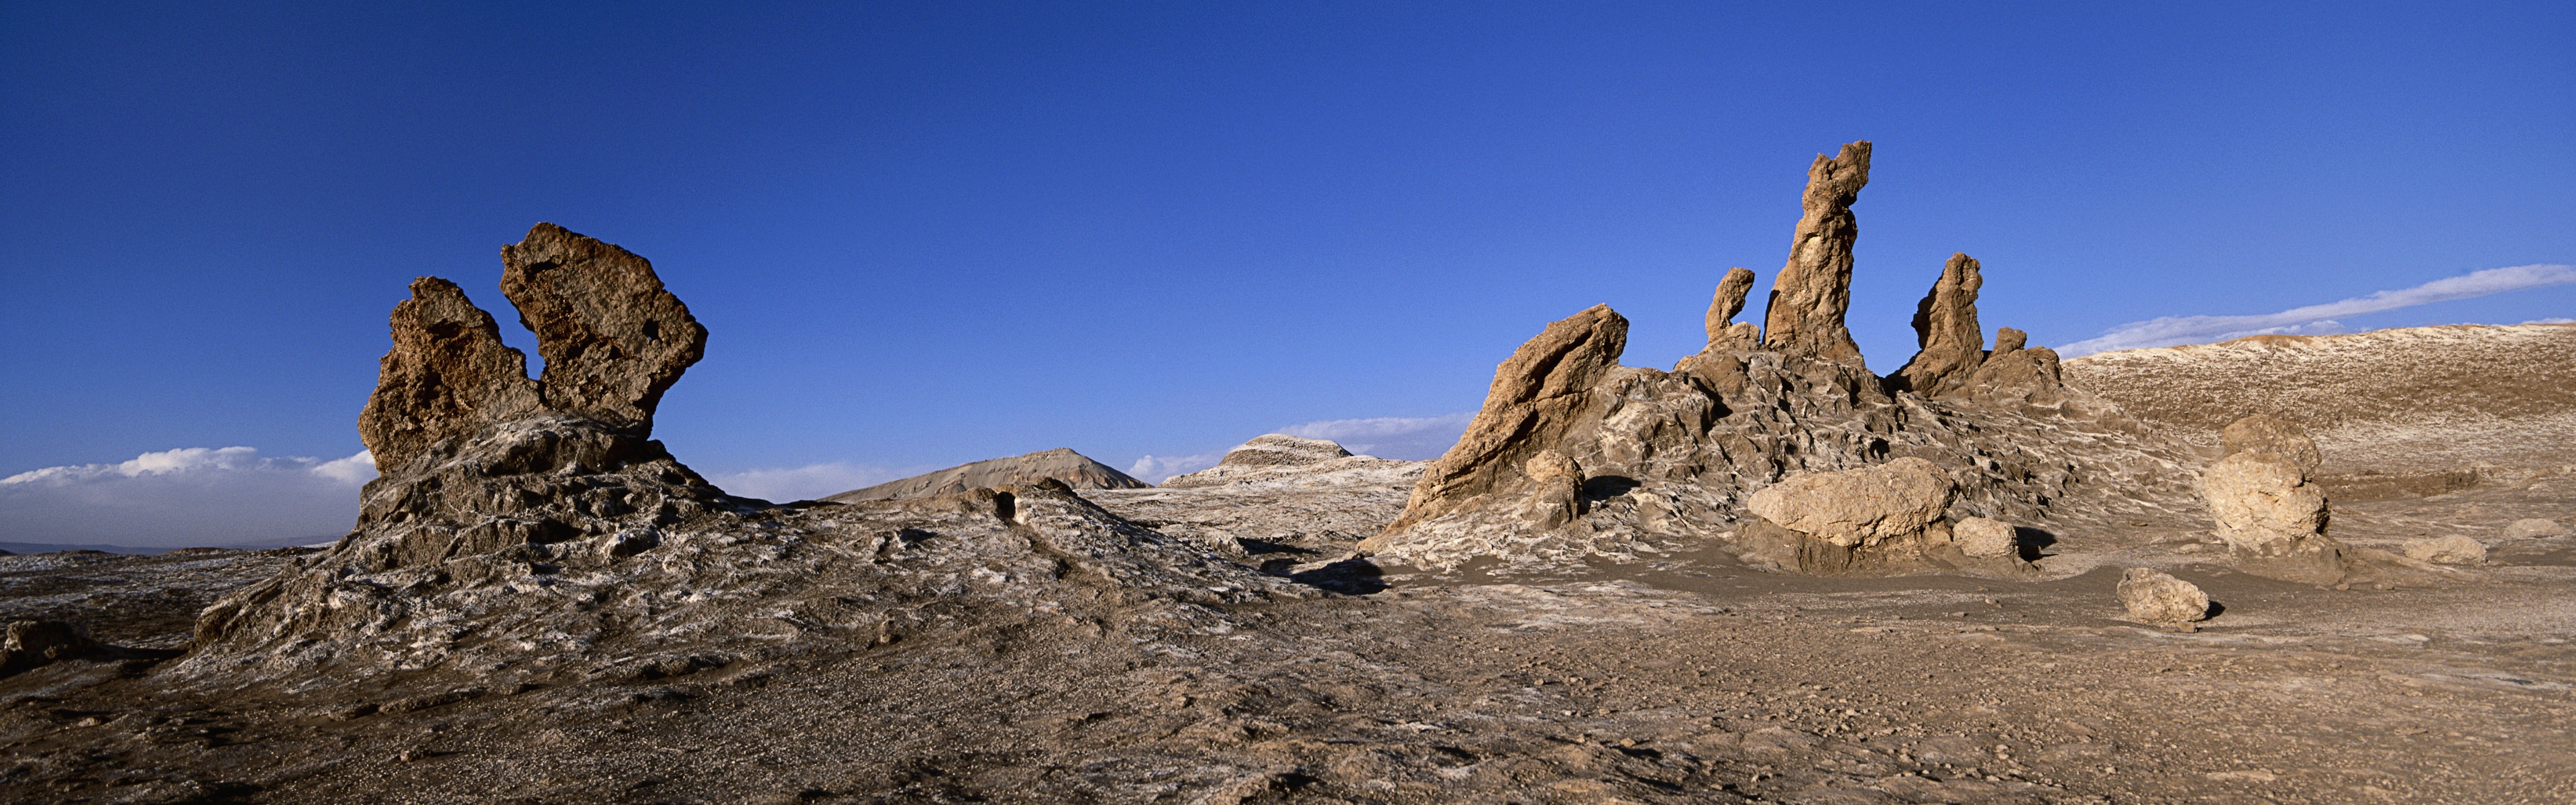 Les déserts chauds et arides, de Windows 8 fonds d'écran widescreen panoramique #11 - 3840x1200